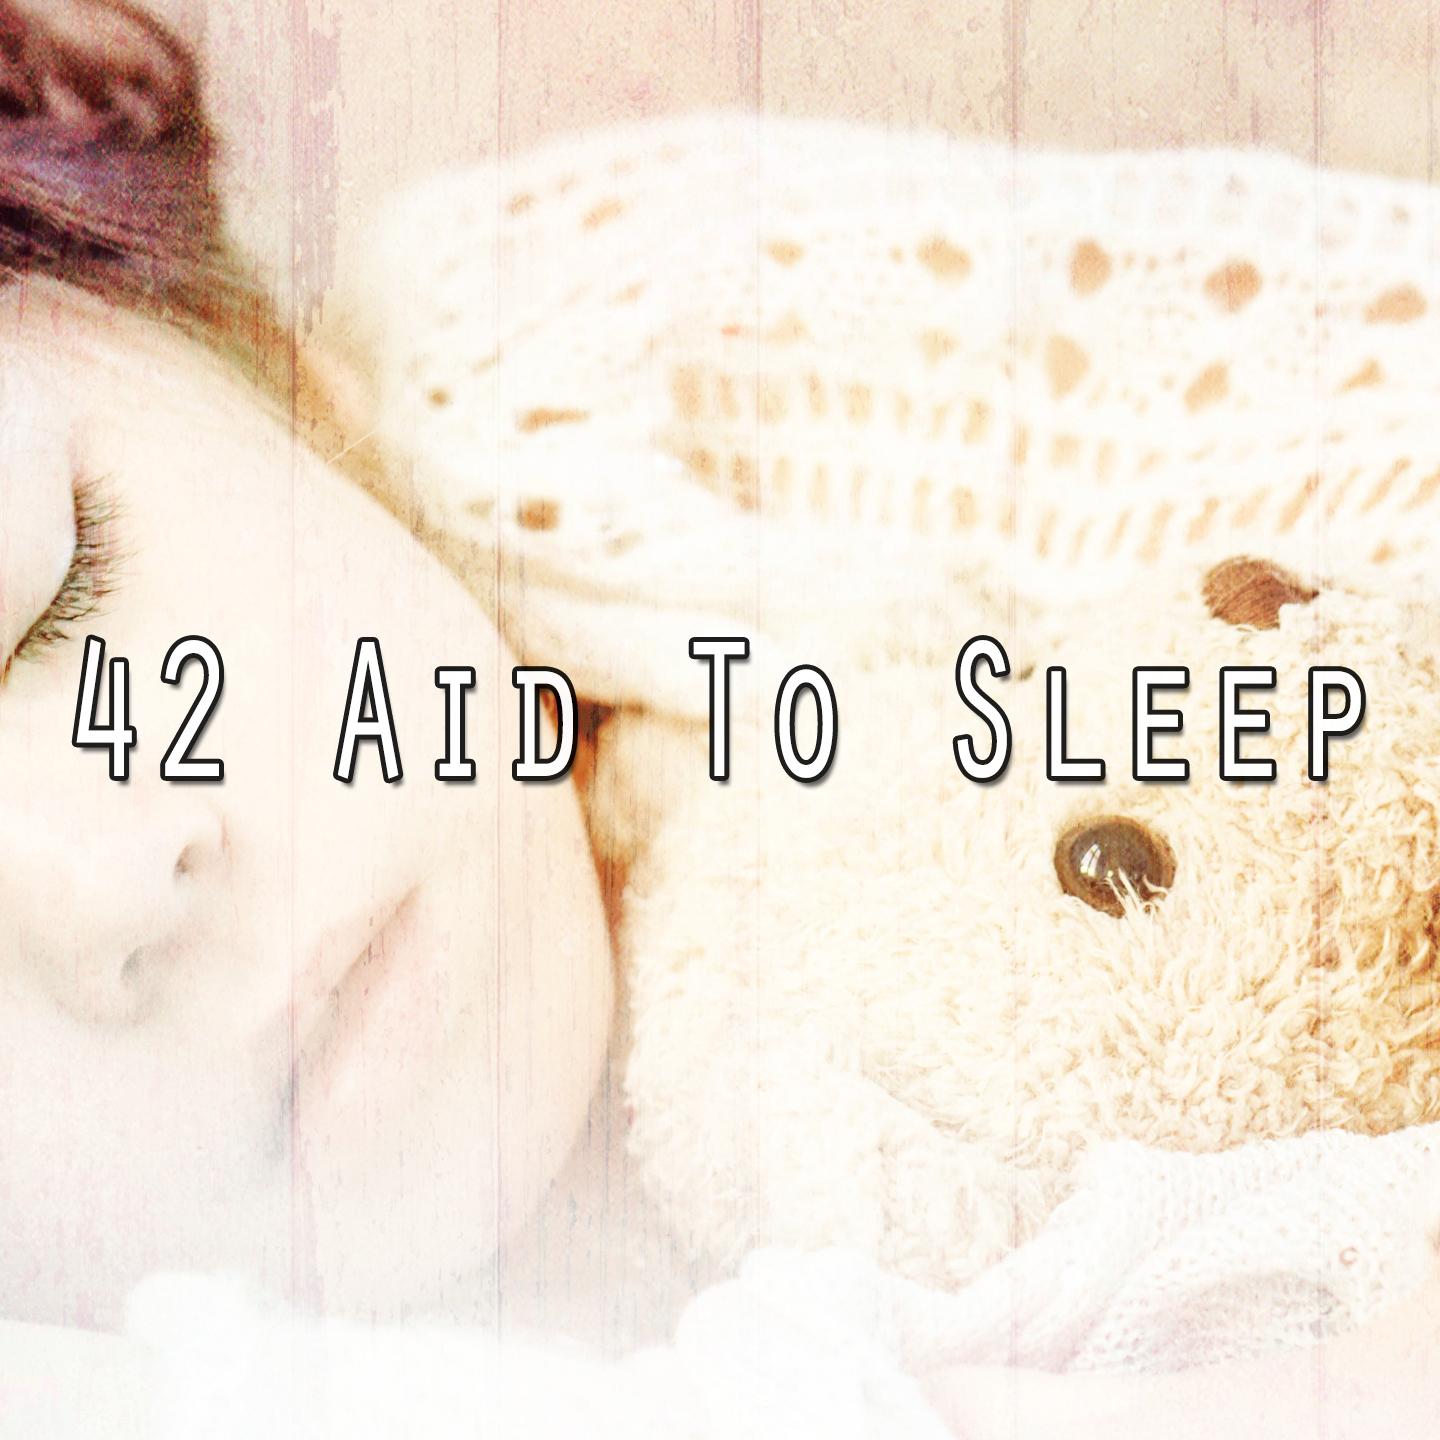 42 Aid to Sleep